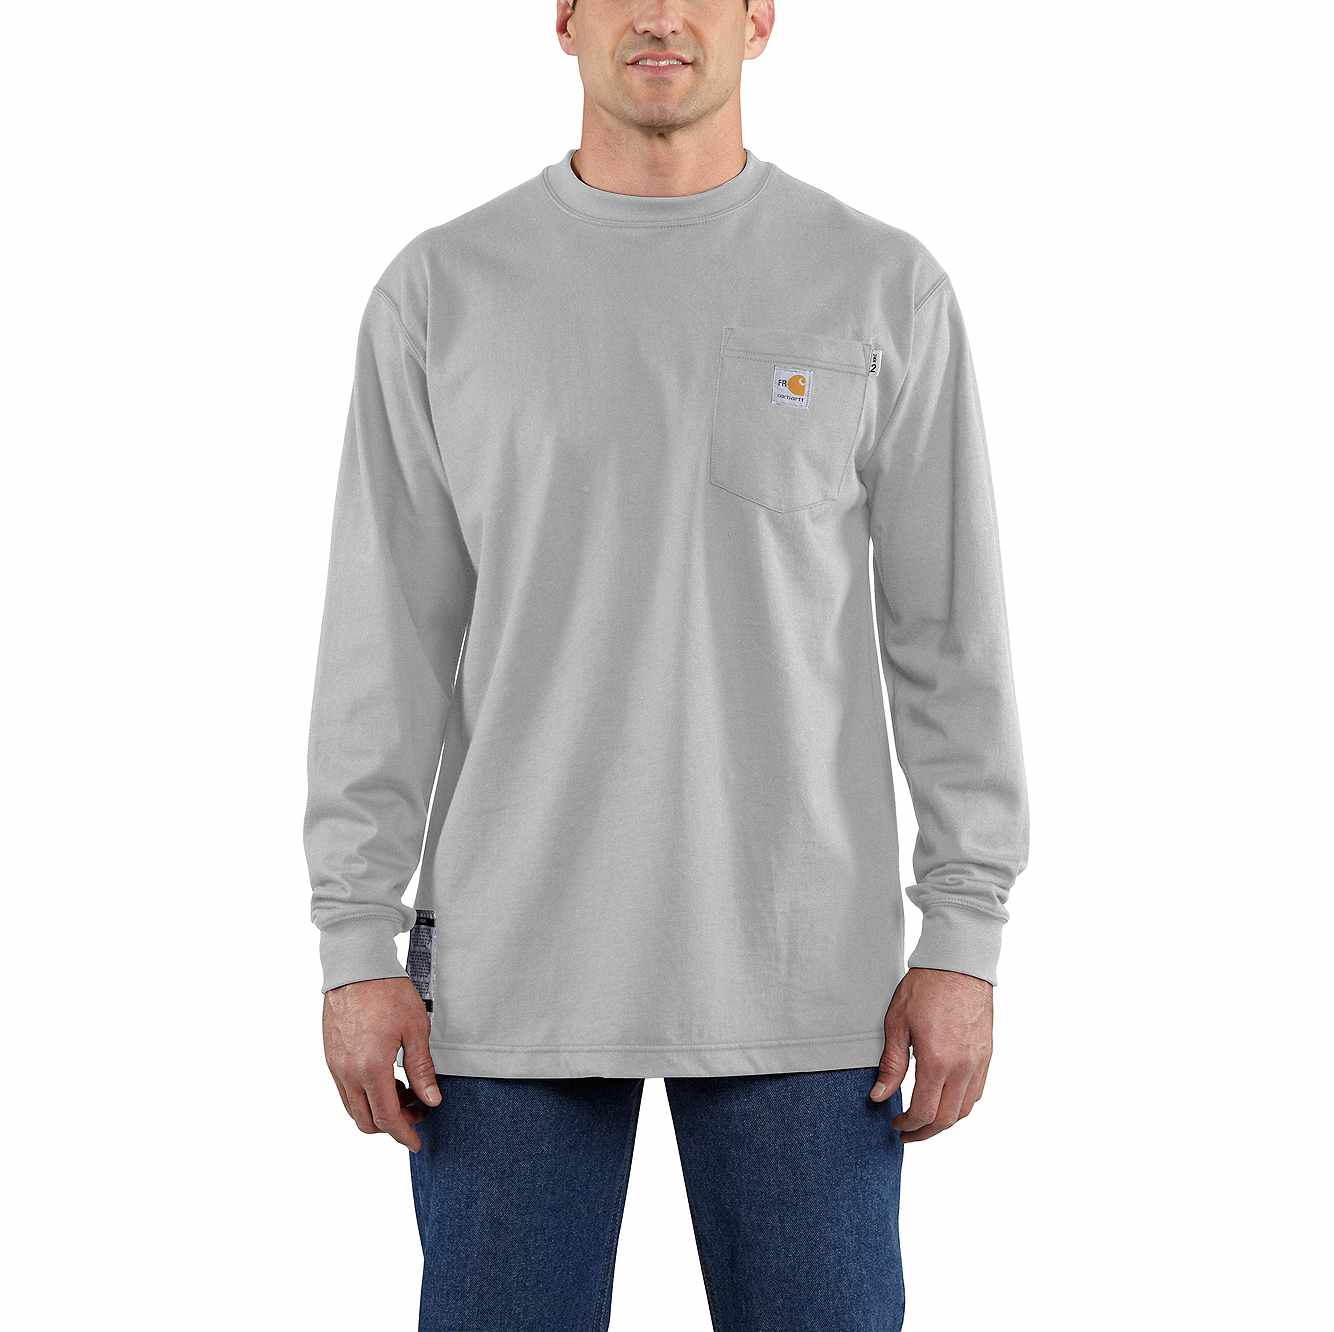 Carhartt Force Cotton FR Light Gray Long Sleeve Shirt